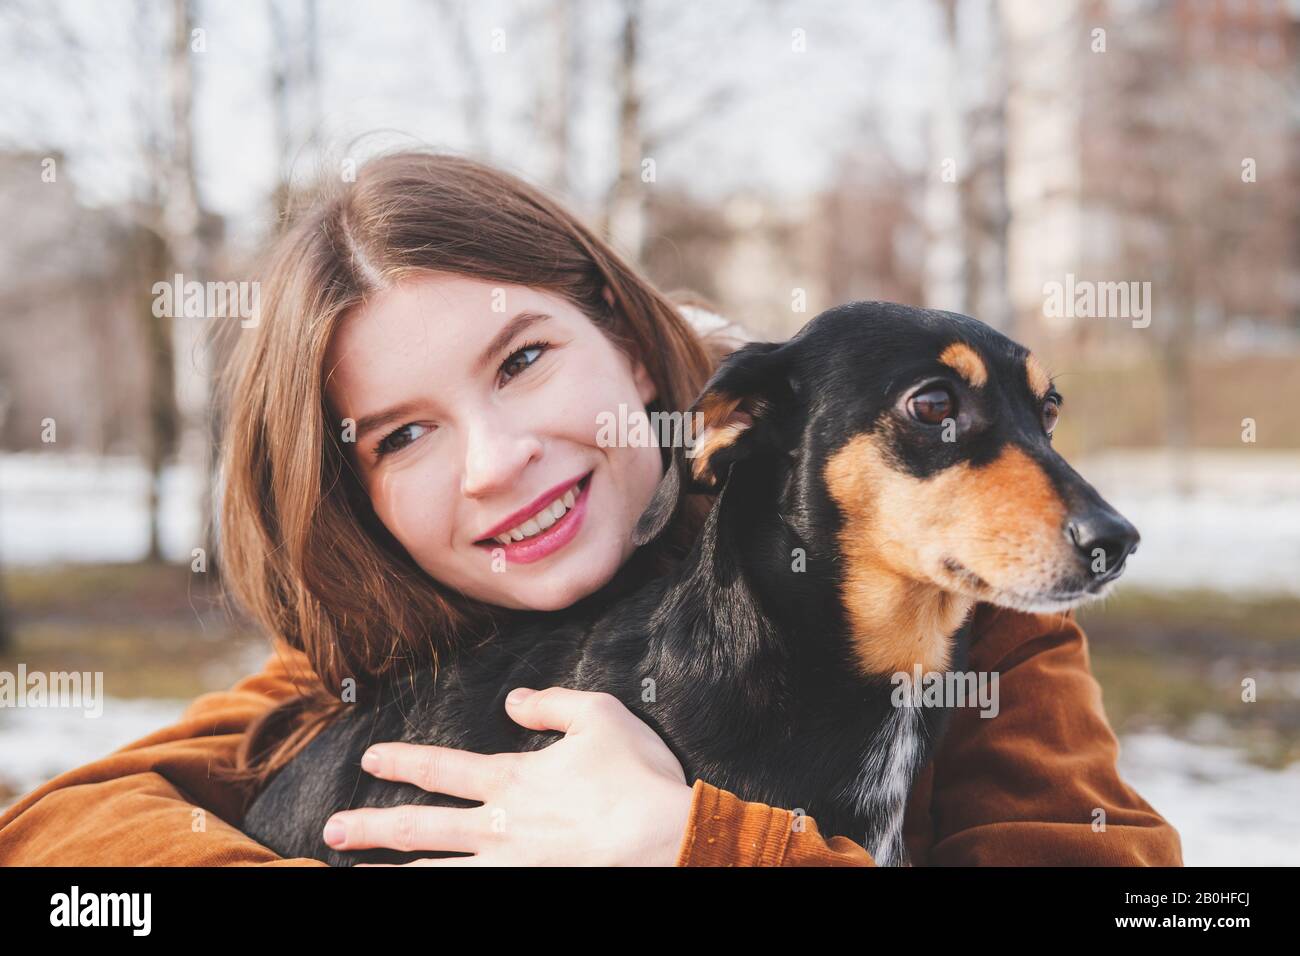 Der Mensch ist glücklich mit einem Hund. Konzept für liebevolle Haustiere: Glückliche junge Frau umarmt ihren Dachshund bei einem Spaziergang Stockfoto